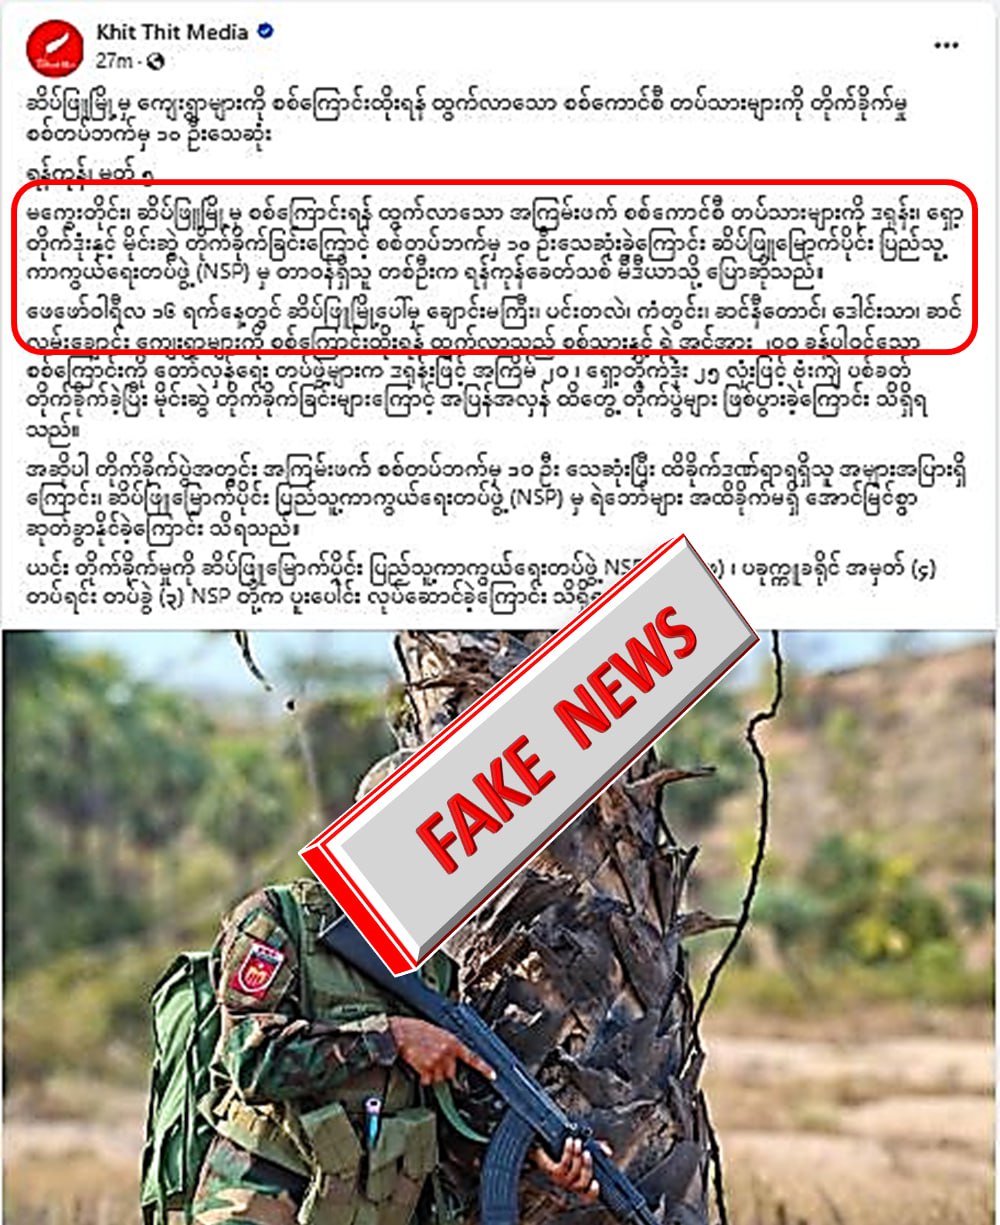 ဆိပ်ဖြူတွင် လုံခြုံရေးတပ်ဖွဲ့ဝင် ၁၀ ဦး သေဆုံးခဲ့တယ်လို့ Khit Thit Media မှသတင်းအမှားရေး